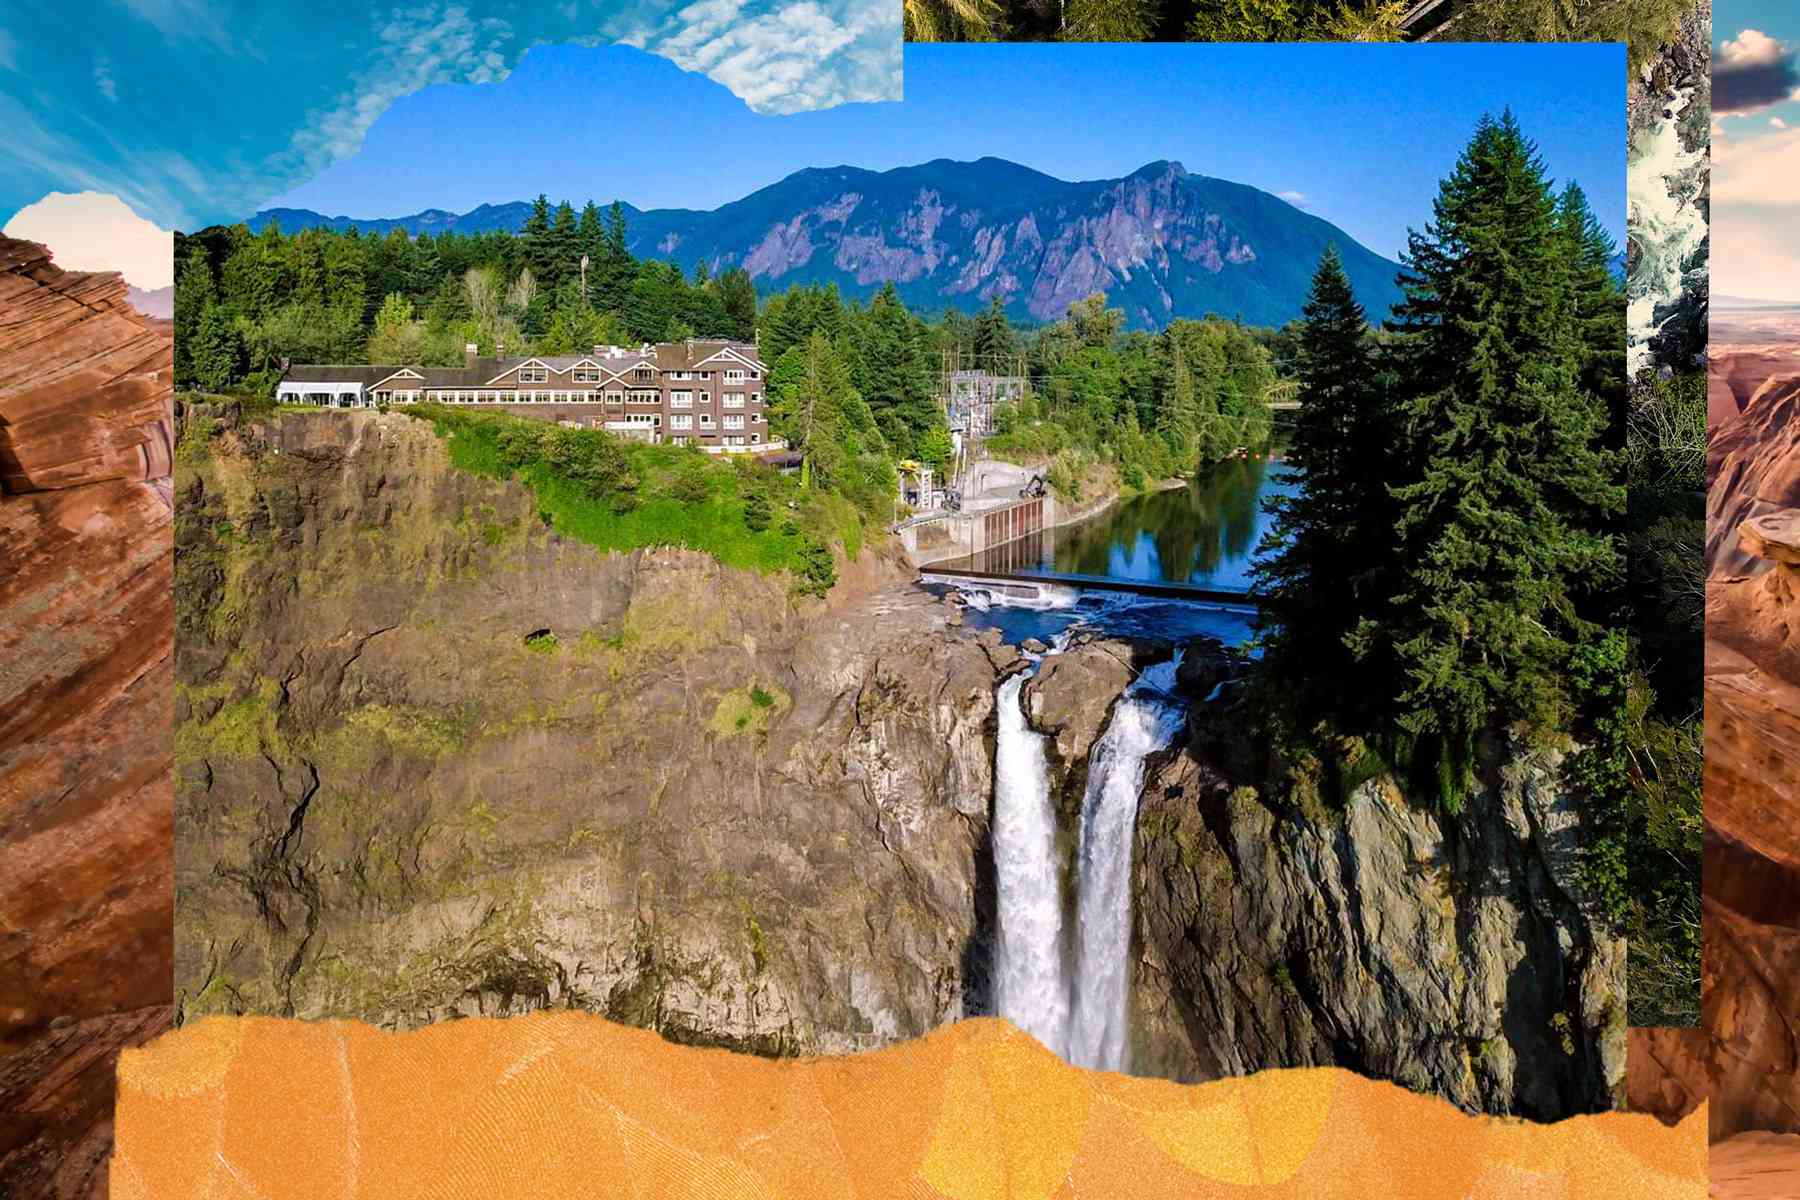 Vue extérieure du Salish Lodge and Spa à Washington, il se trouve sur une falaise à côté d'une cascade avec des montagnes au loin